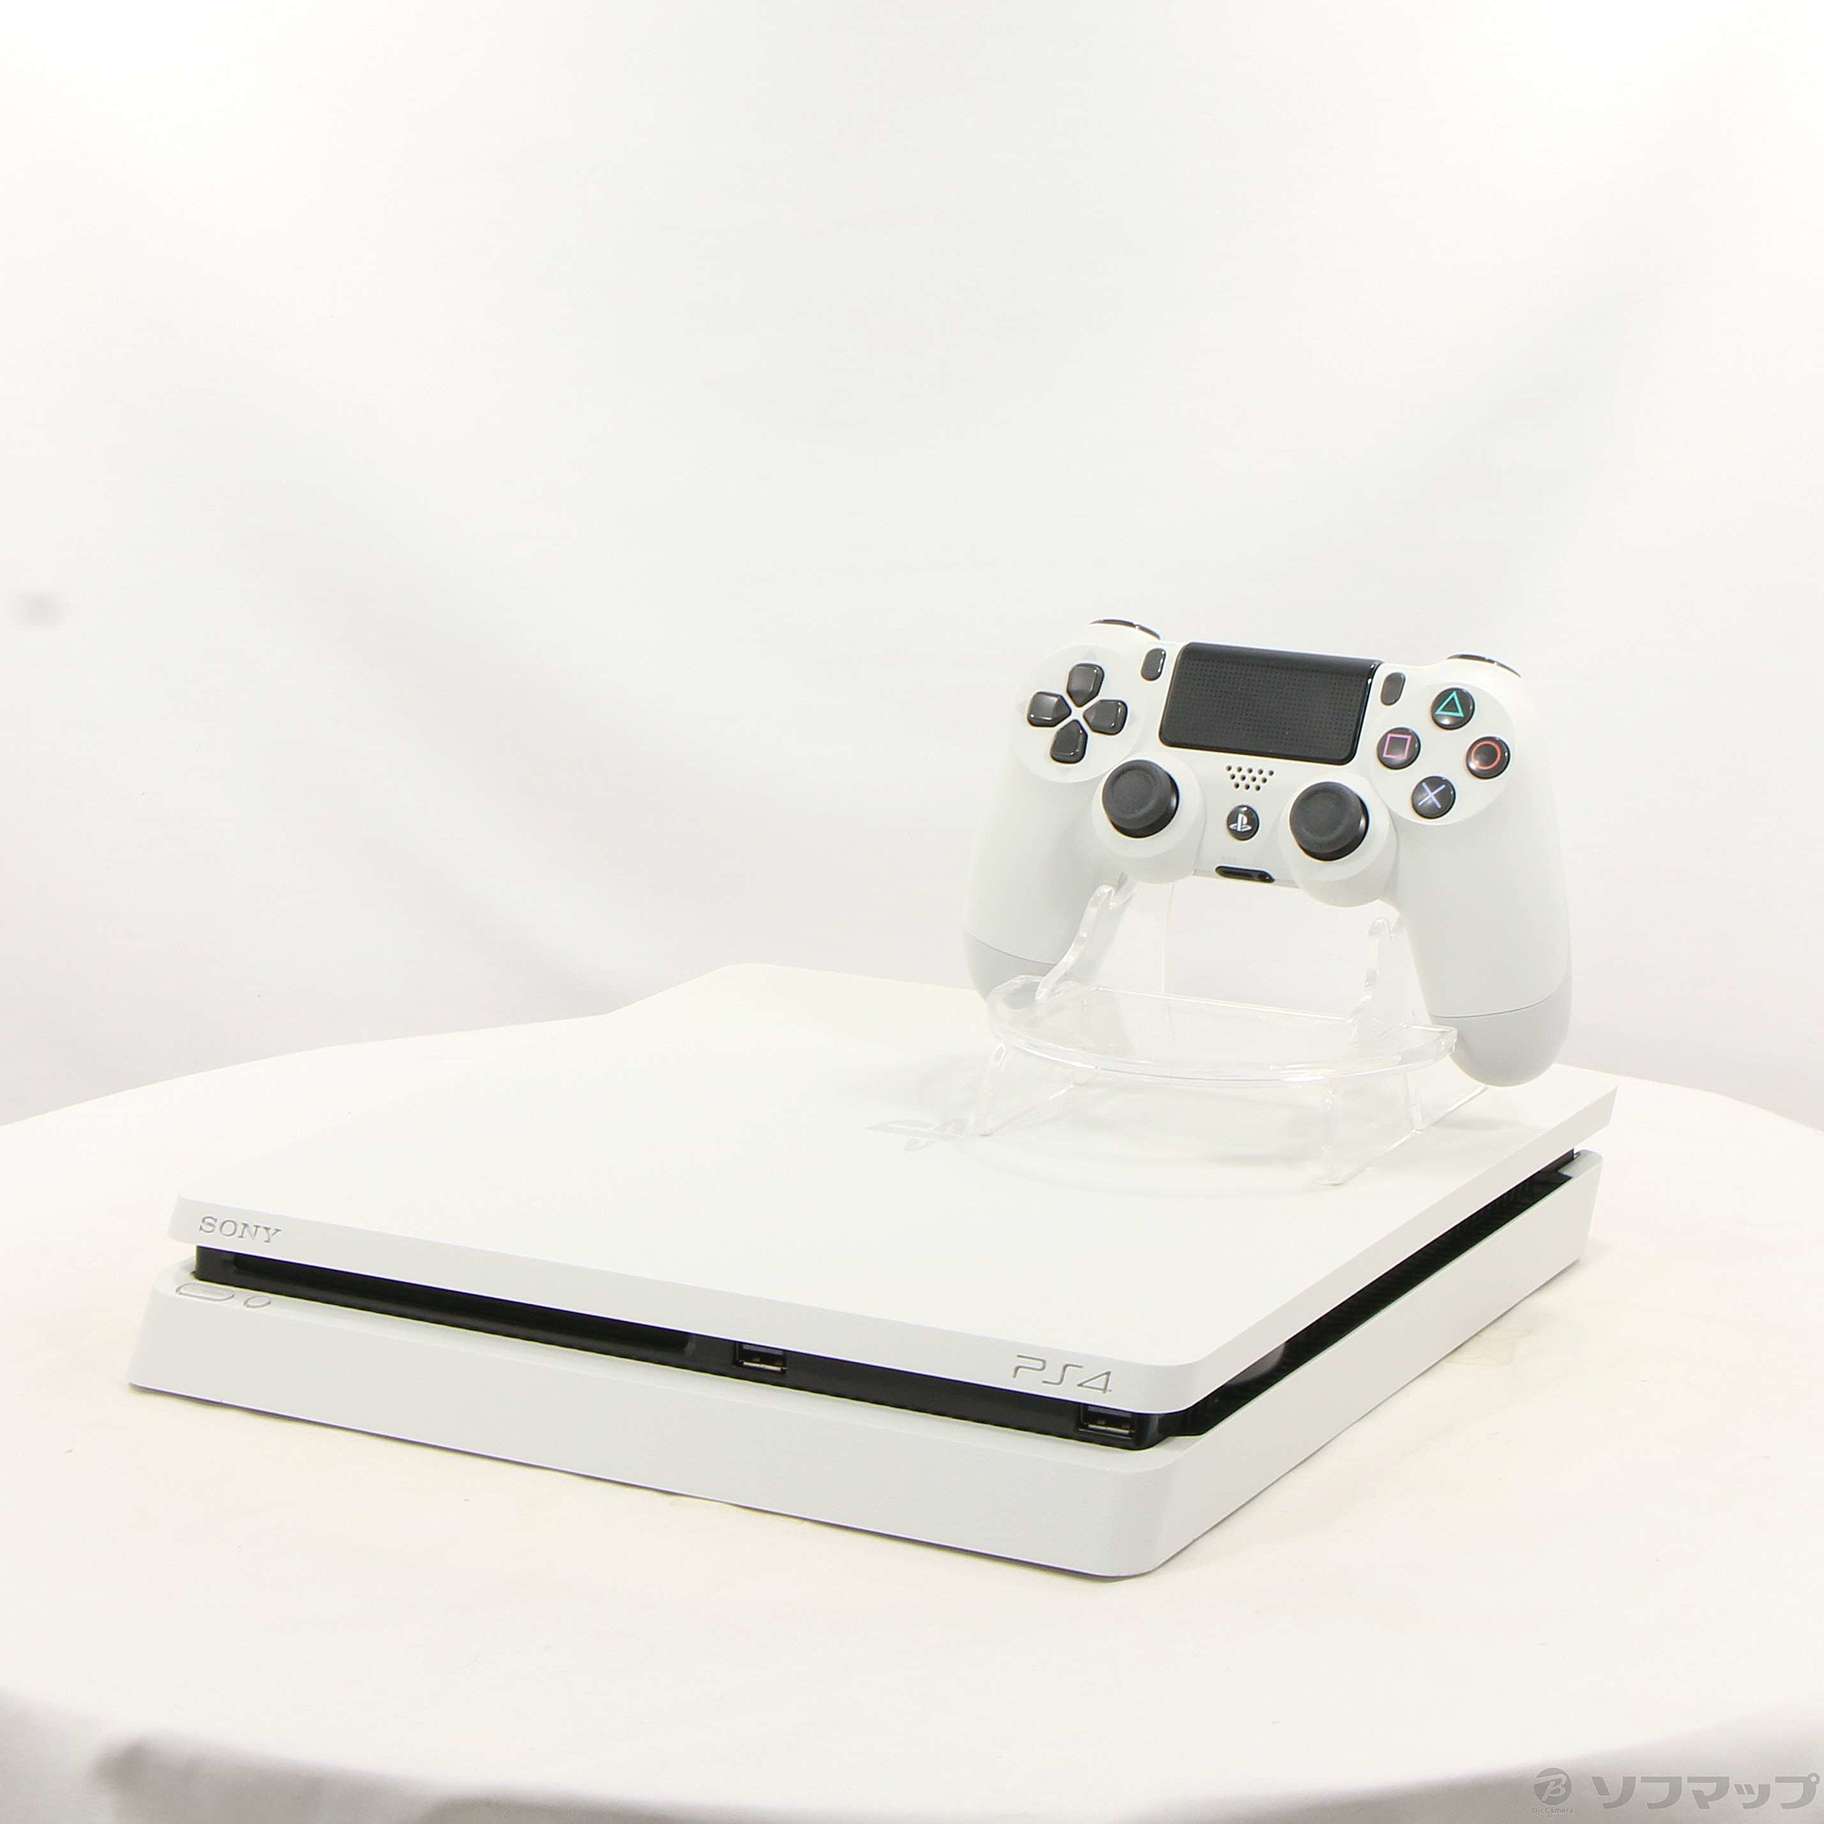 中古】PlayStation 4 グレイシャー・ホワイト 500GB [2133048503047